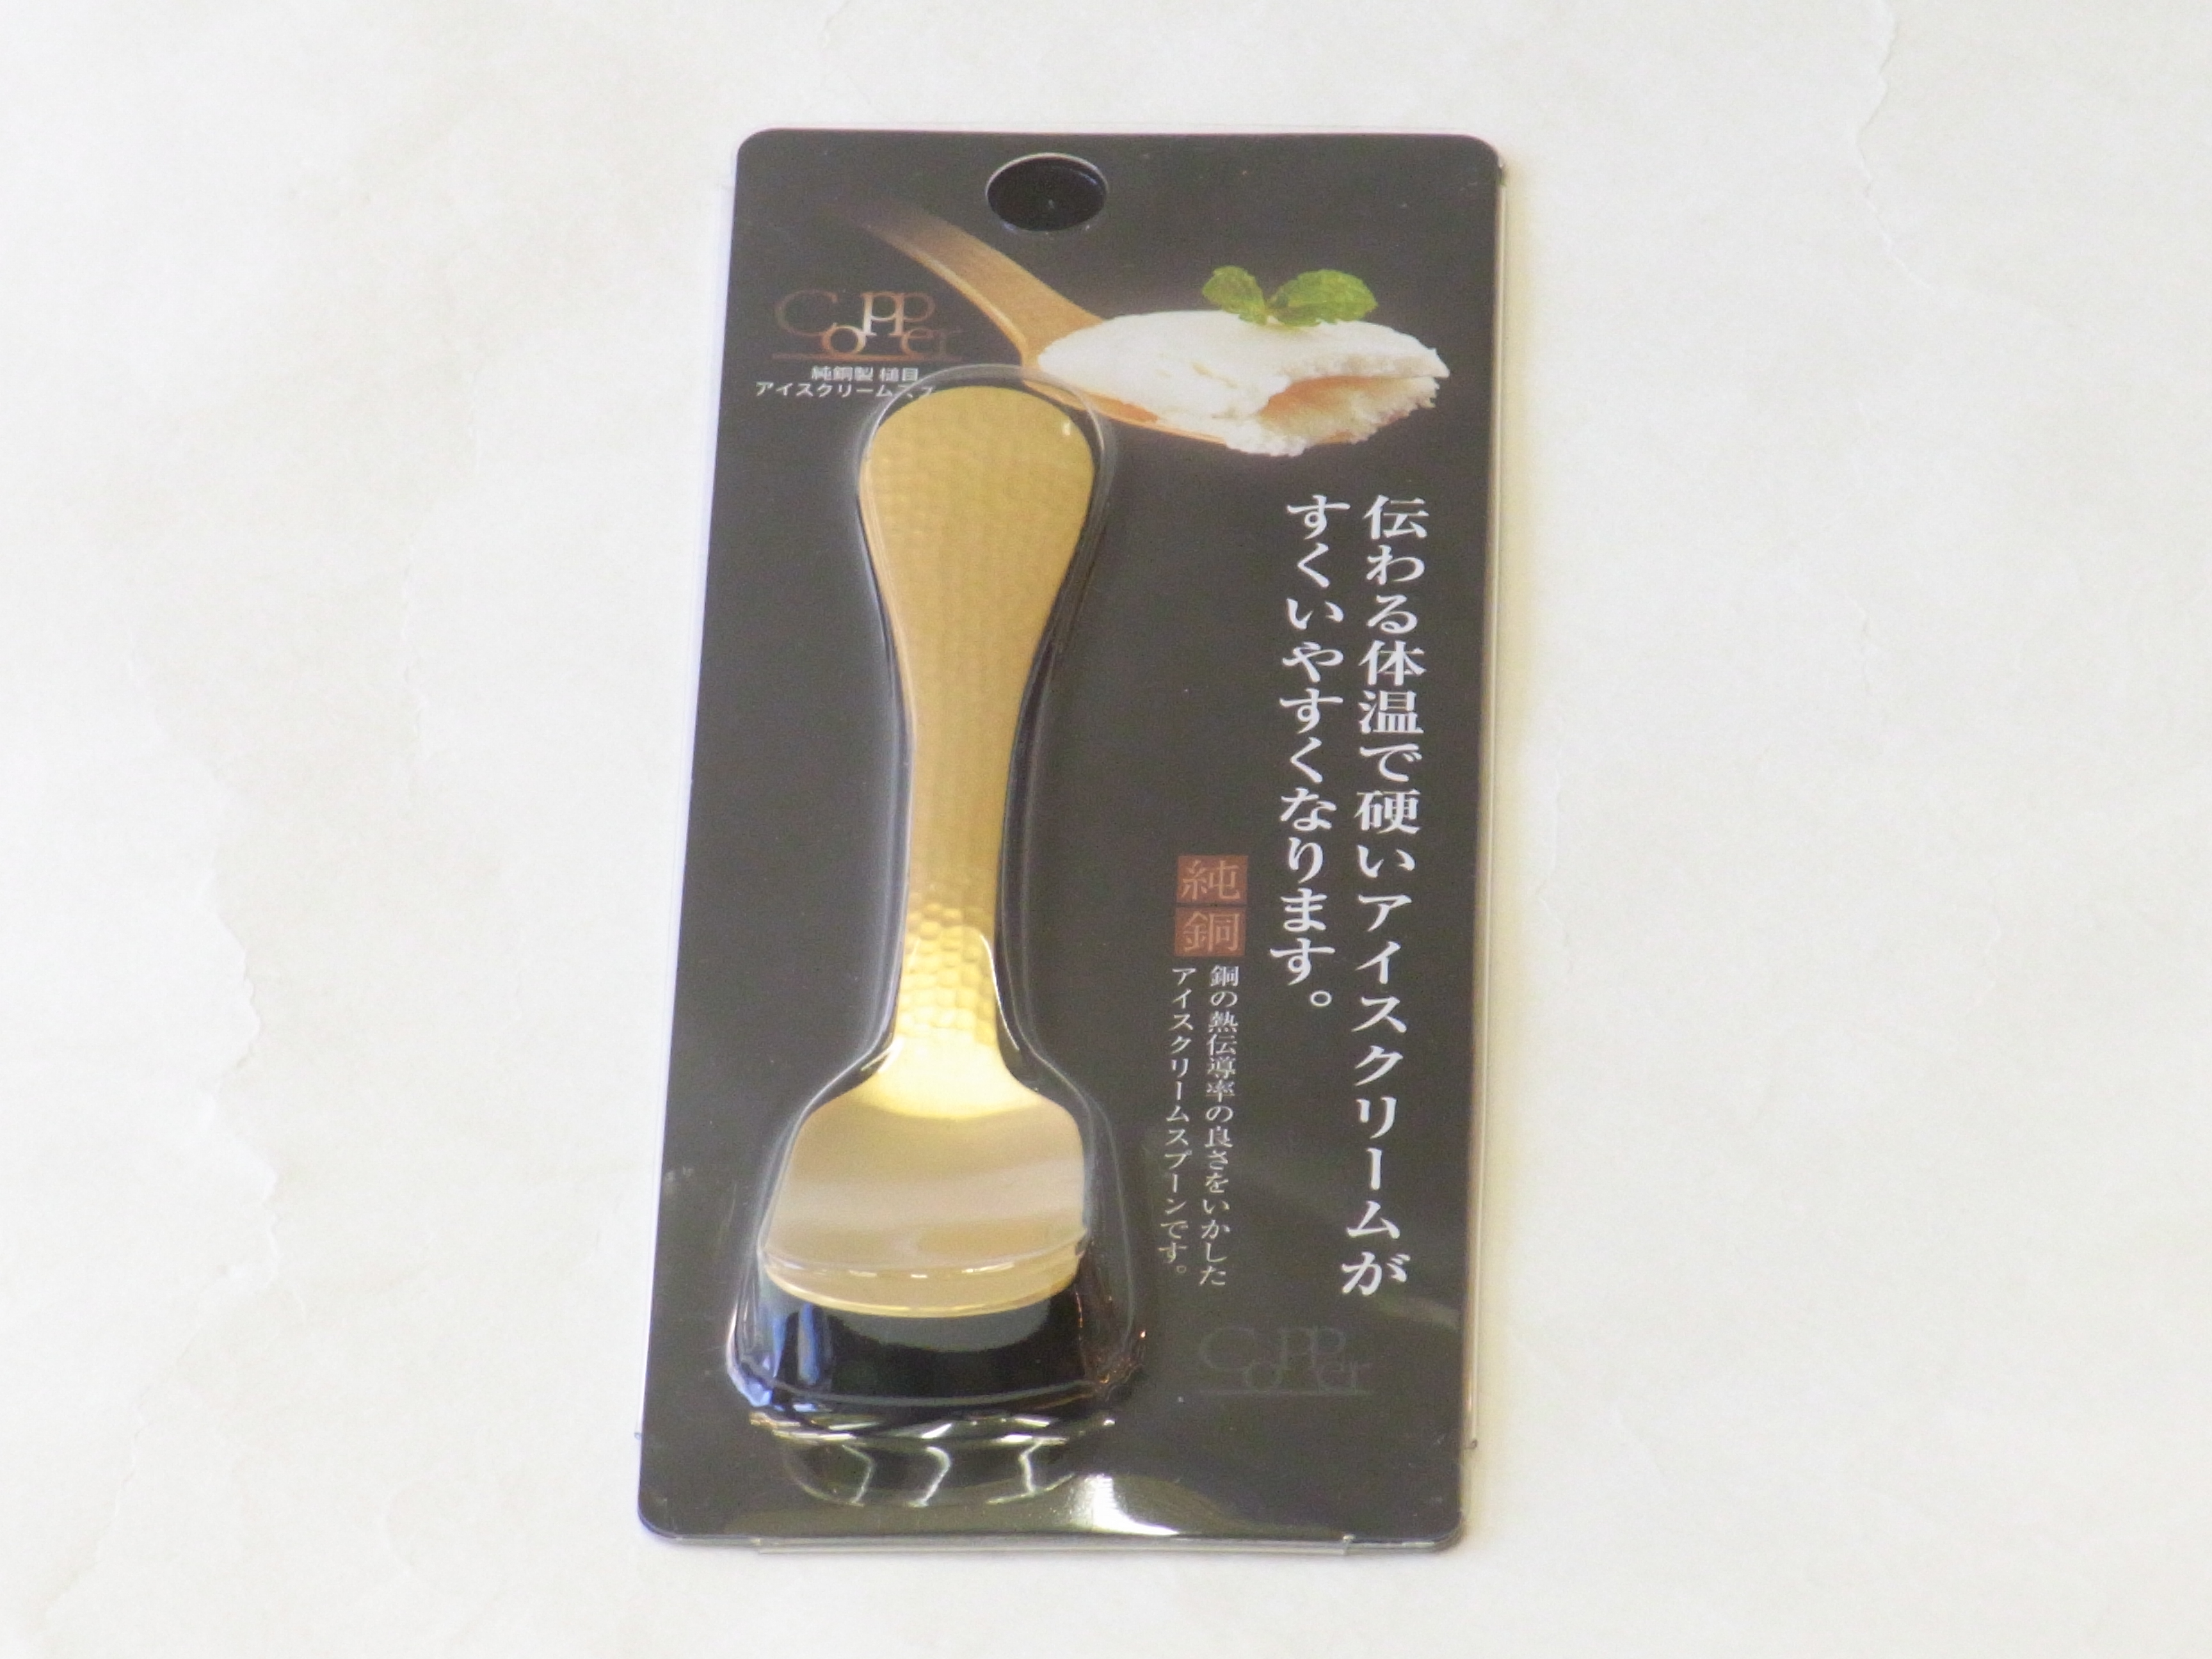 日本製 純銅 アイスクリーム専用スプーン 槌目 金メッキ | 小林漆陶 映える器ギャラリー 岐阜市| 日本一の漆陶器 茶道具の品揃えと在庫